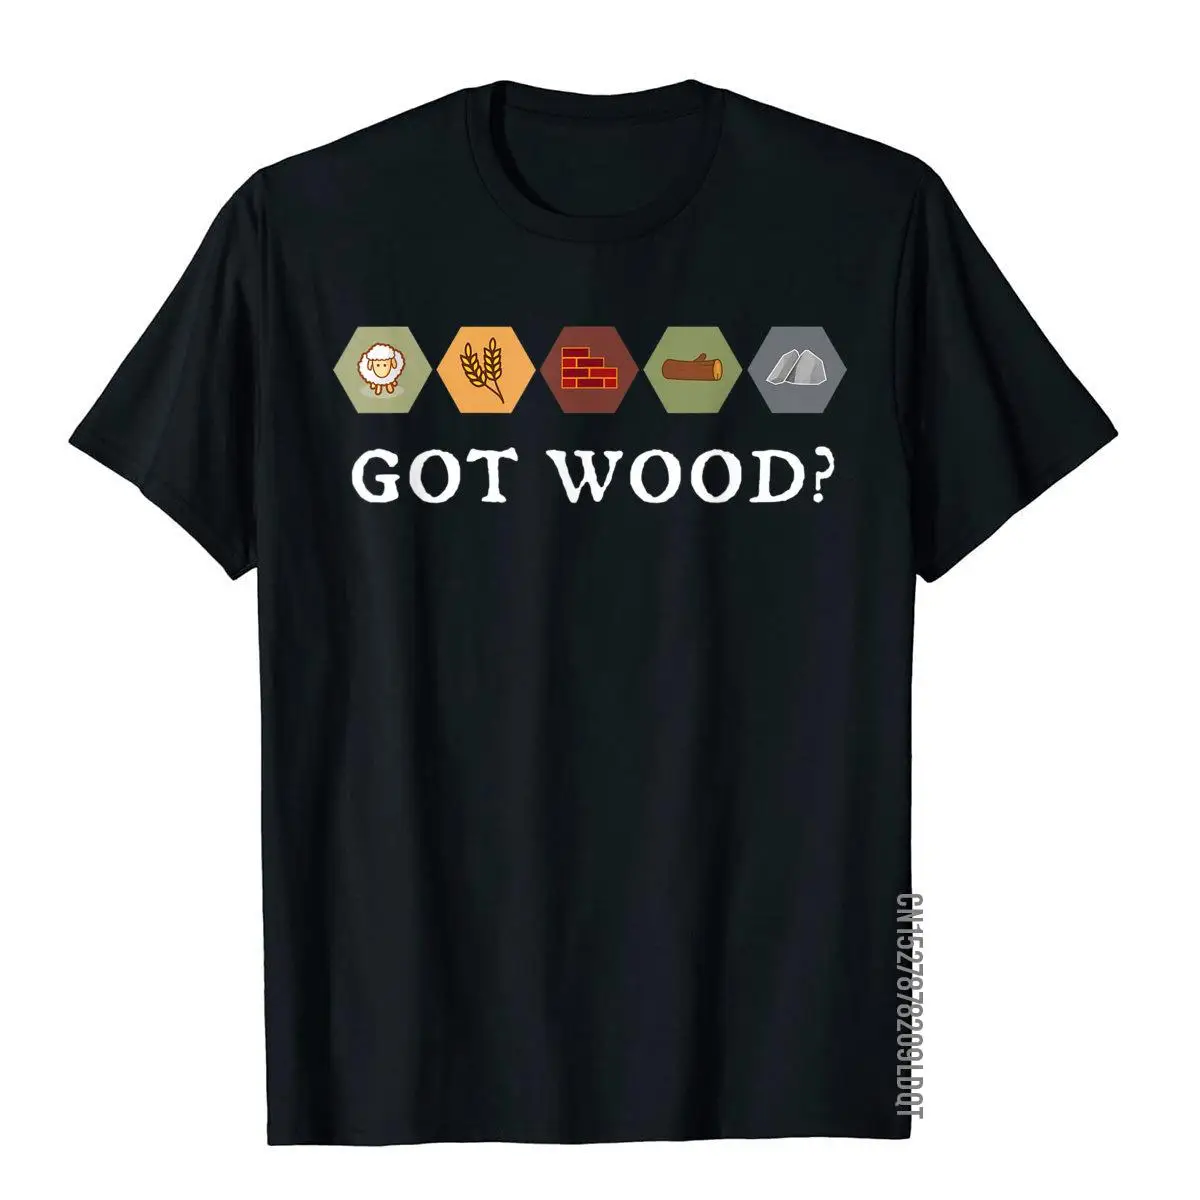 Ночная футболка с надписью Red Wood-Giants, настольная игра, нормкор Топ, футболки для мужчин, хлопковые топы, специальная дизайнерская рубашка